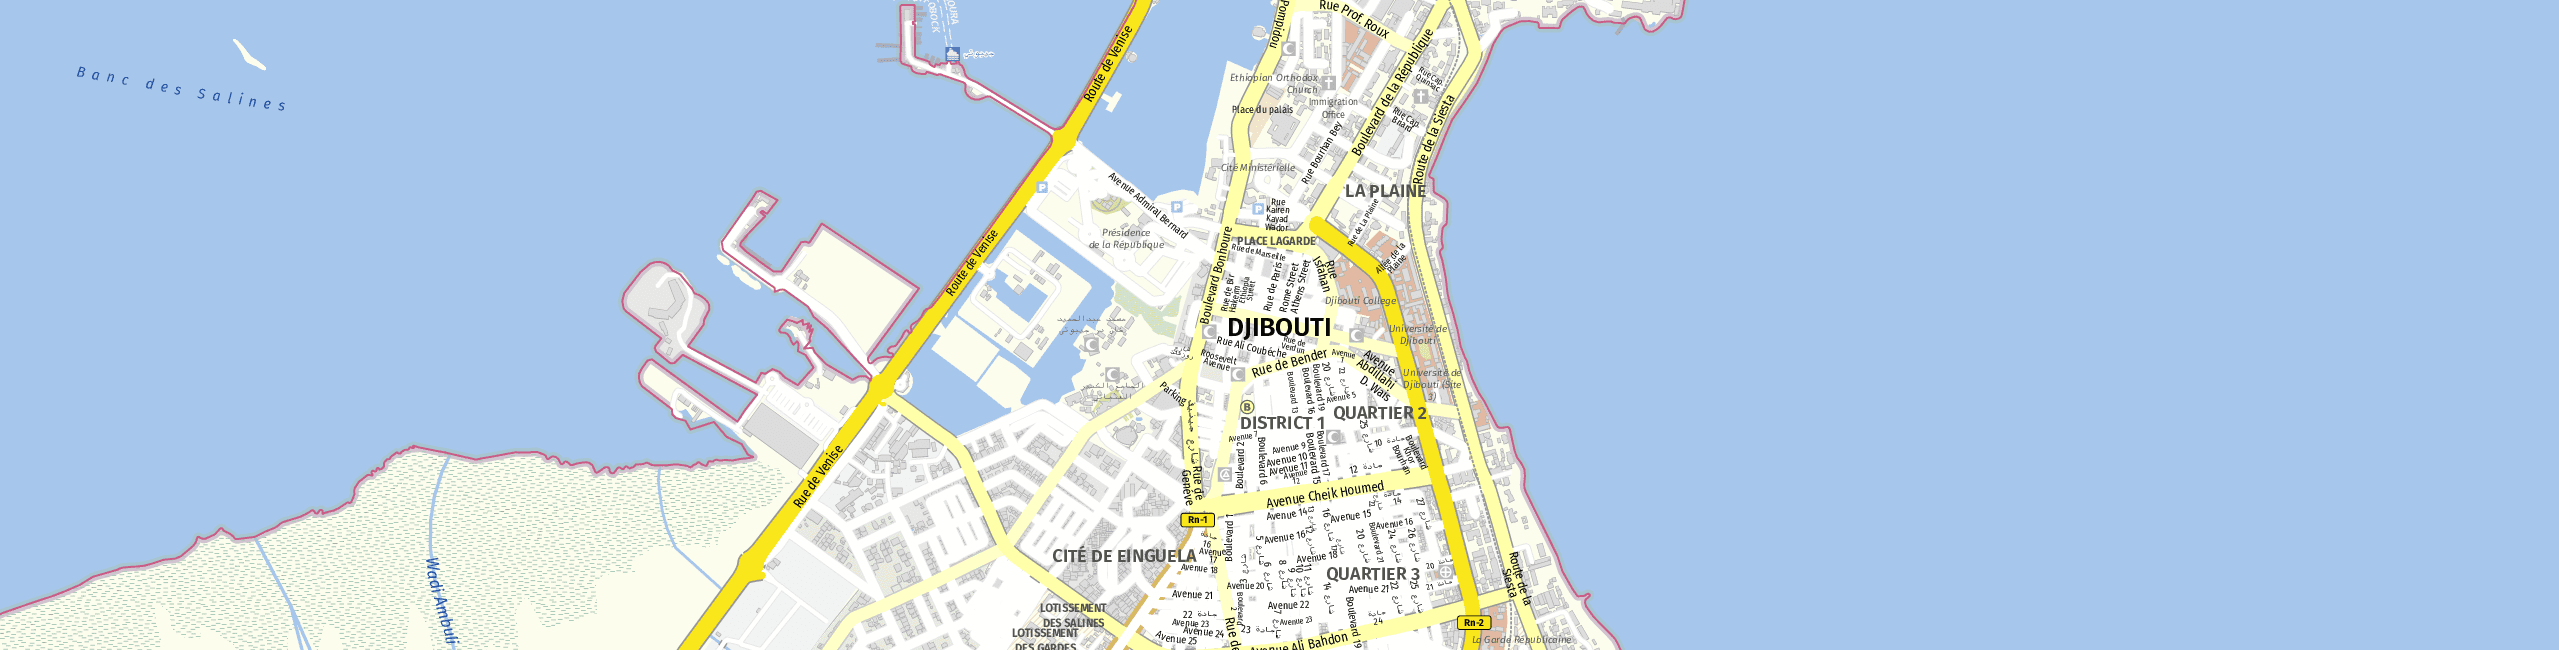 Stadtplan Dschibuti zum Downloaden.